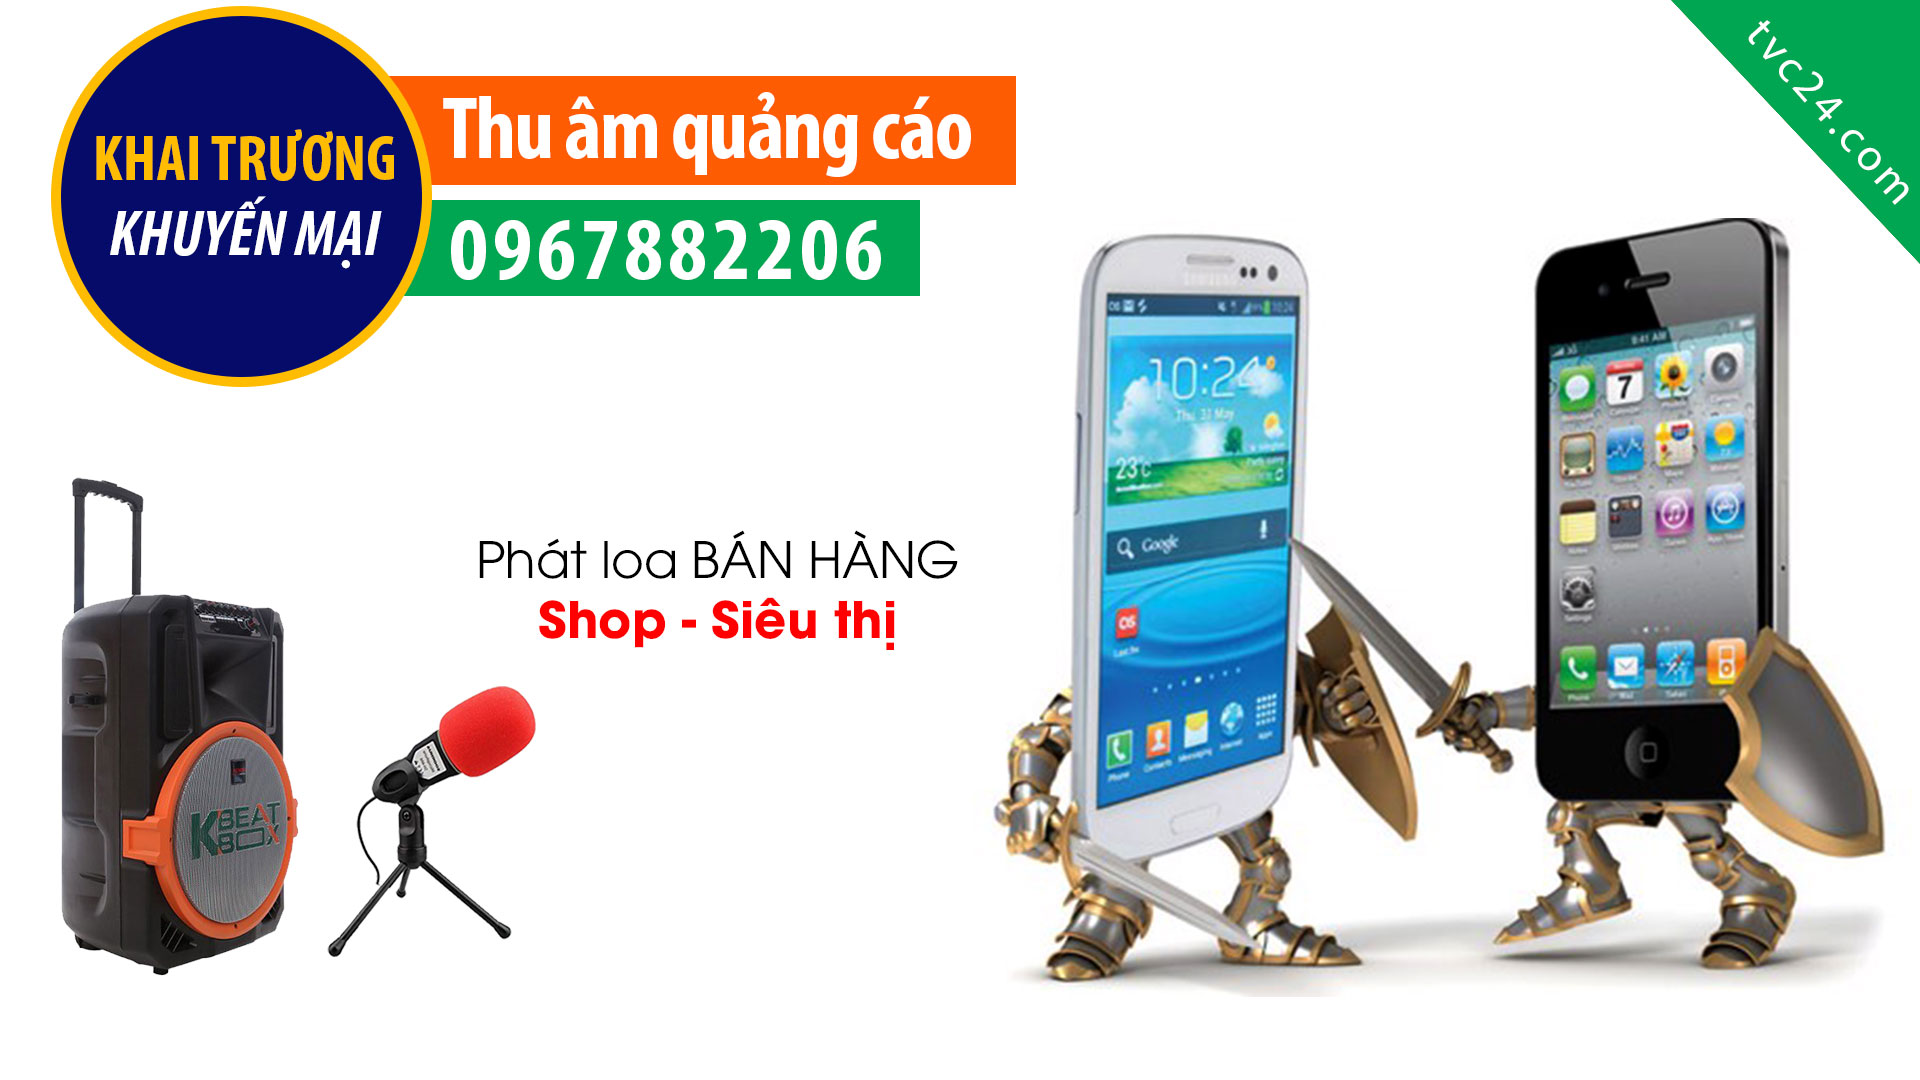 Thu âm phát loa bán hàng Cửa hàng điện thoại Nam Tùng mobile